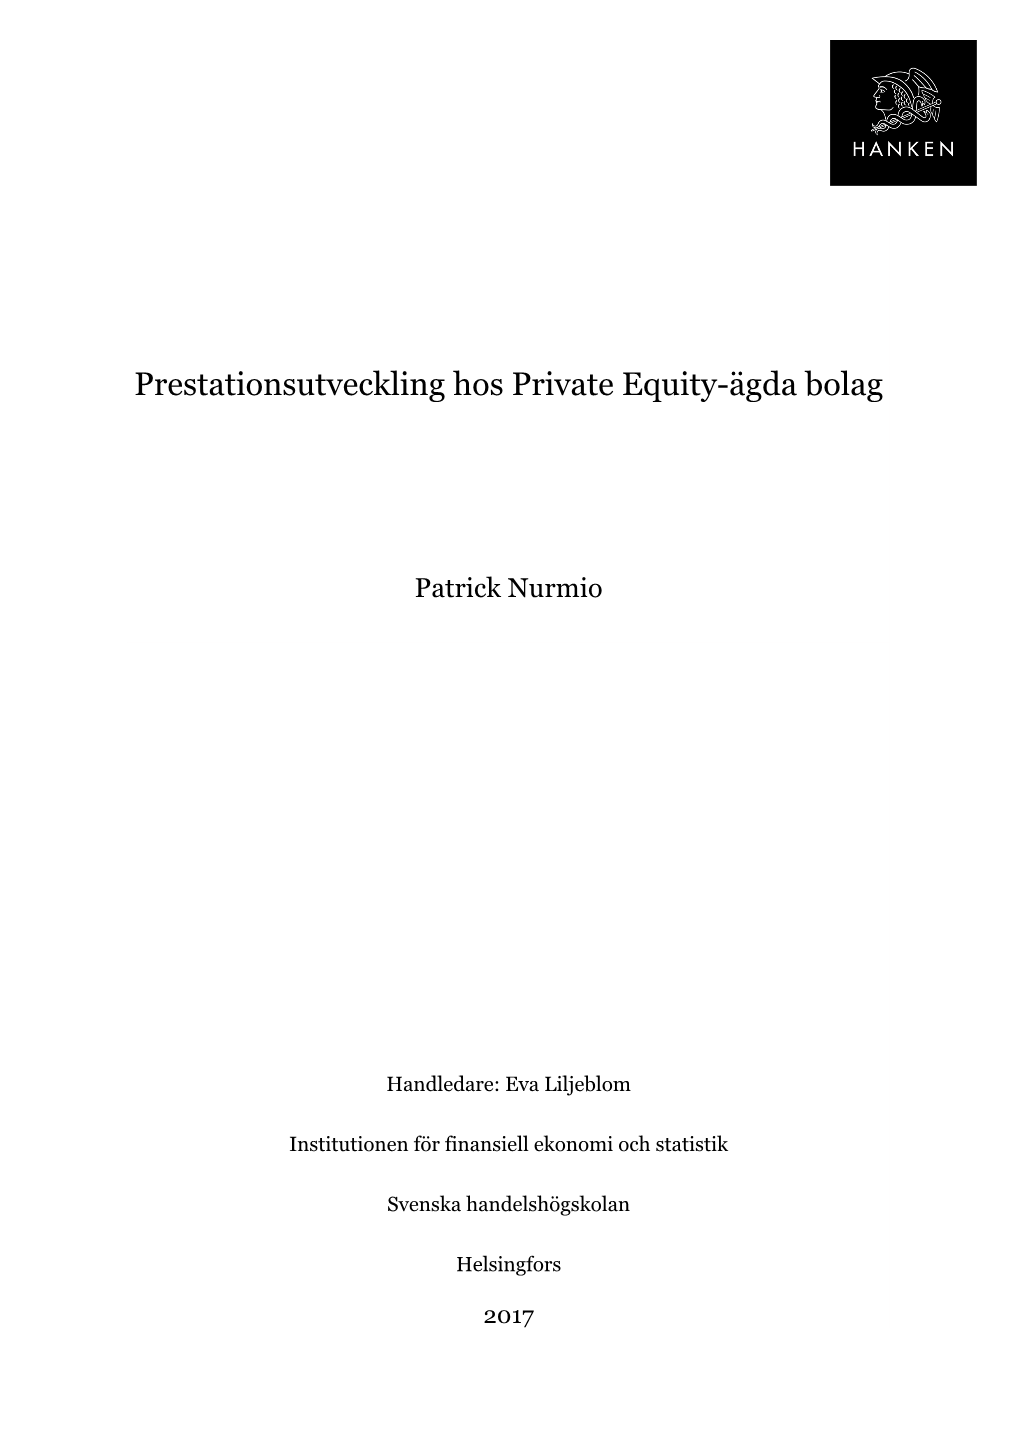 Prestationsutveckling Hos Private Equity-Ägda Bolag